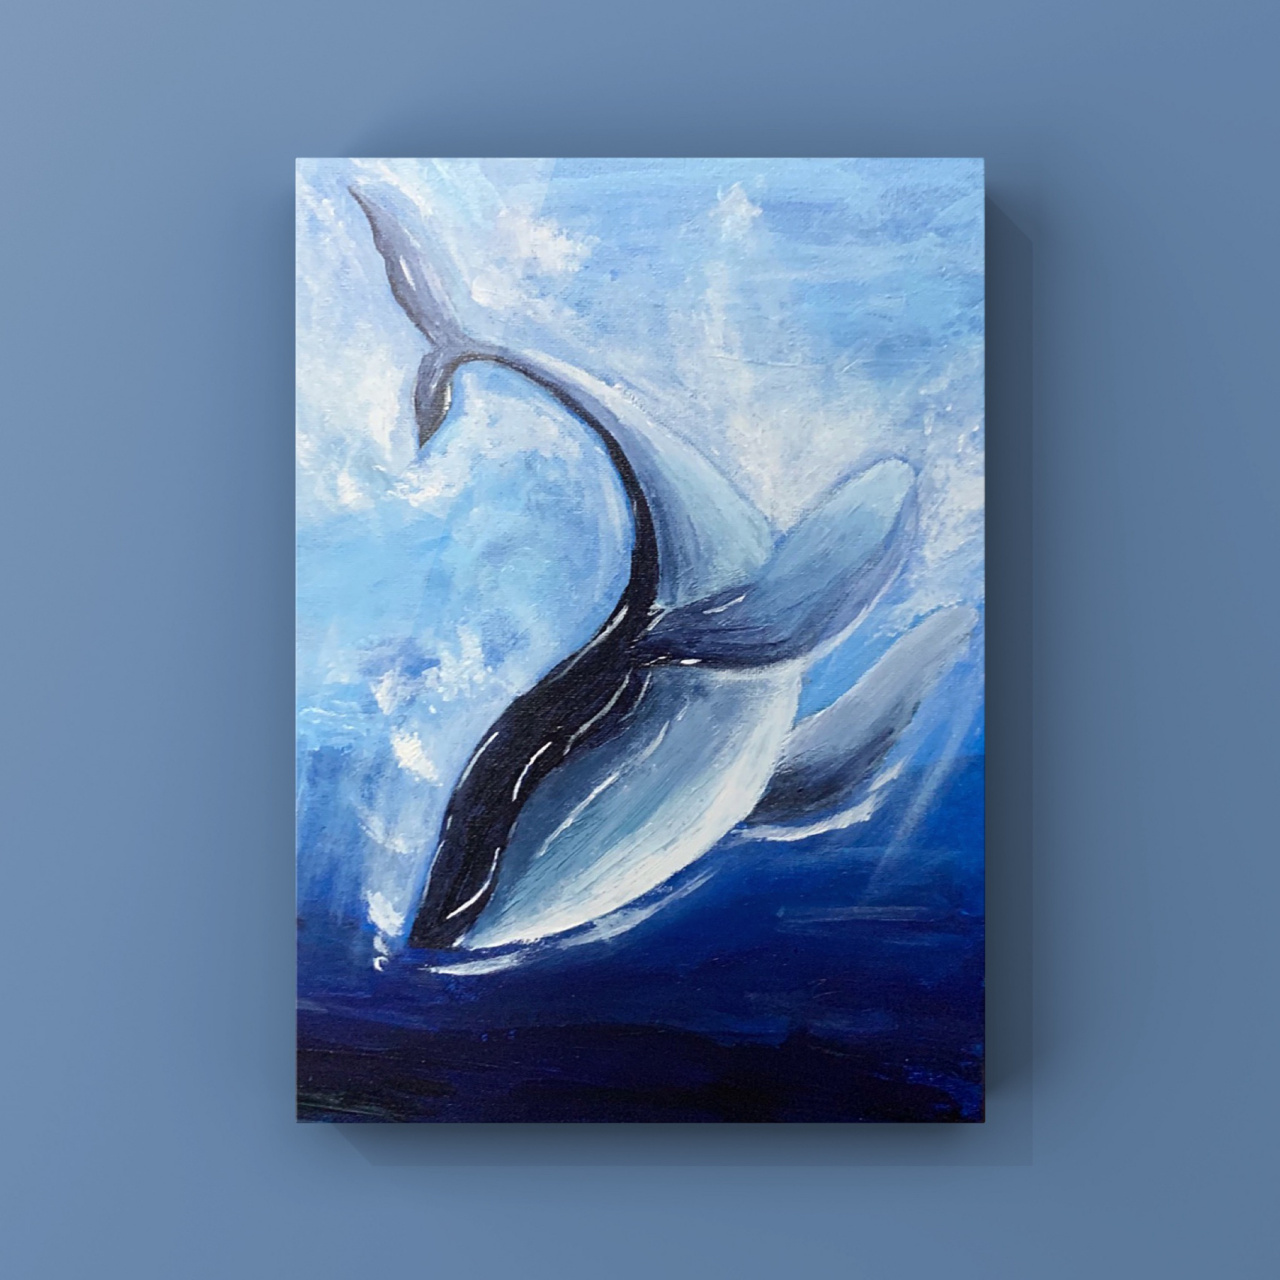 蓝色海洋蓝鲸鱼95 水水粉粉的蓝色色调,深海的鲸鱼,被温柔的大海